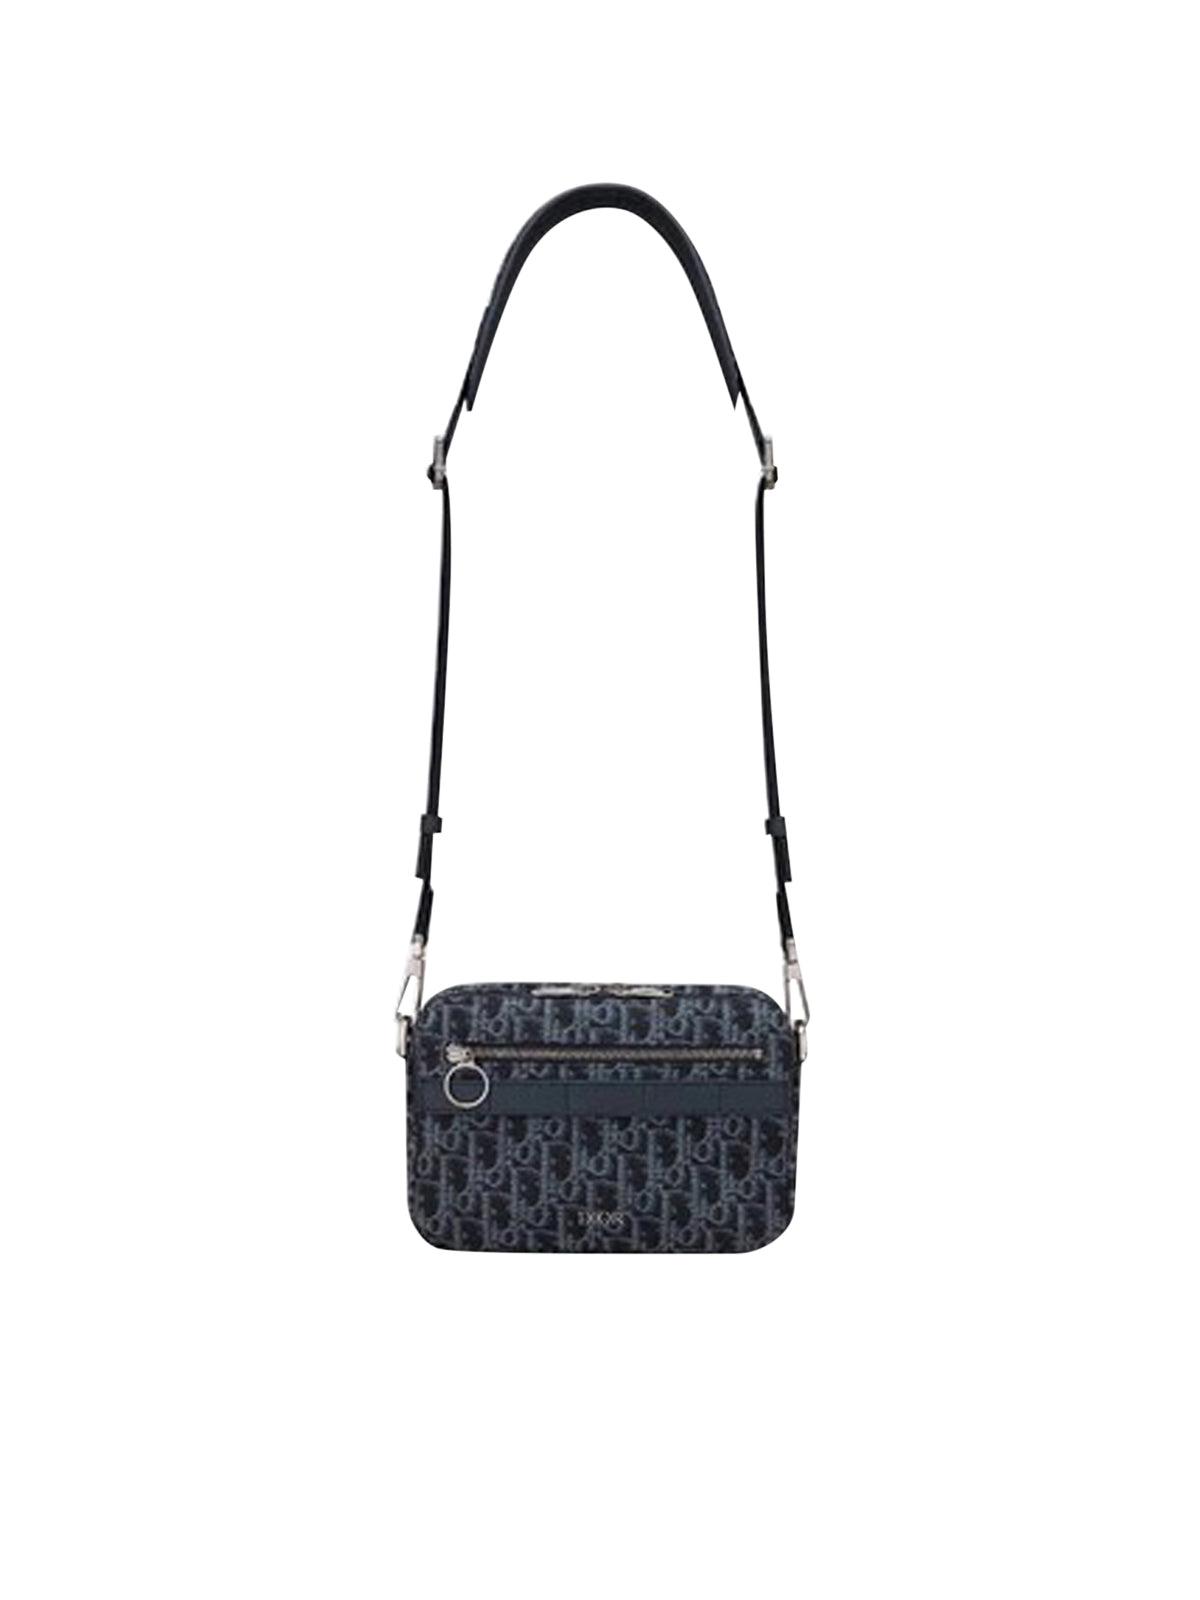 Dior Oblique SAFARI MESSENGER BAG